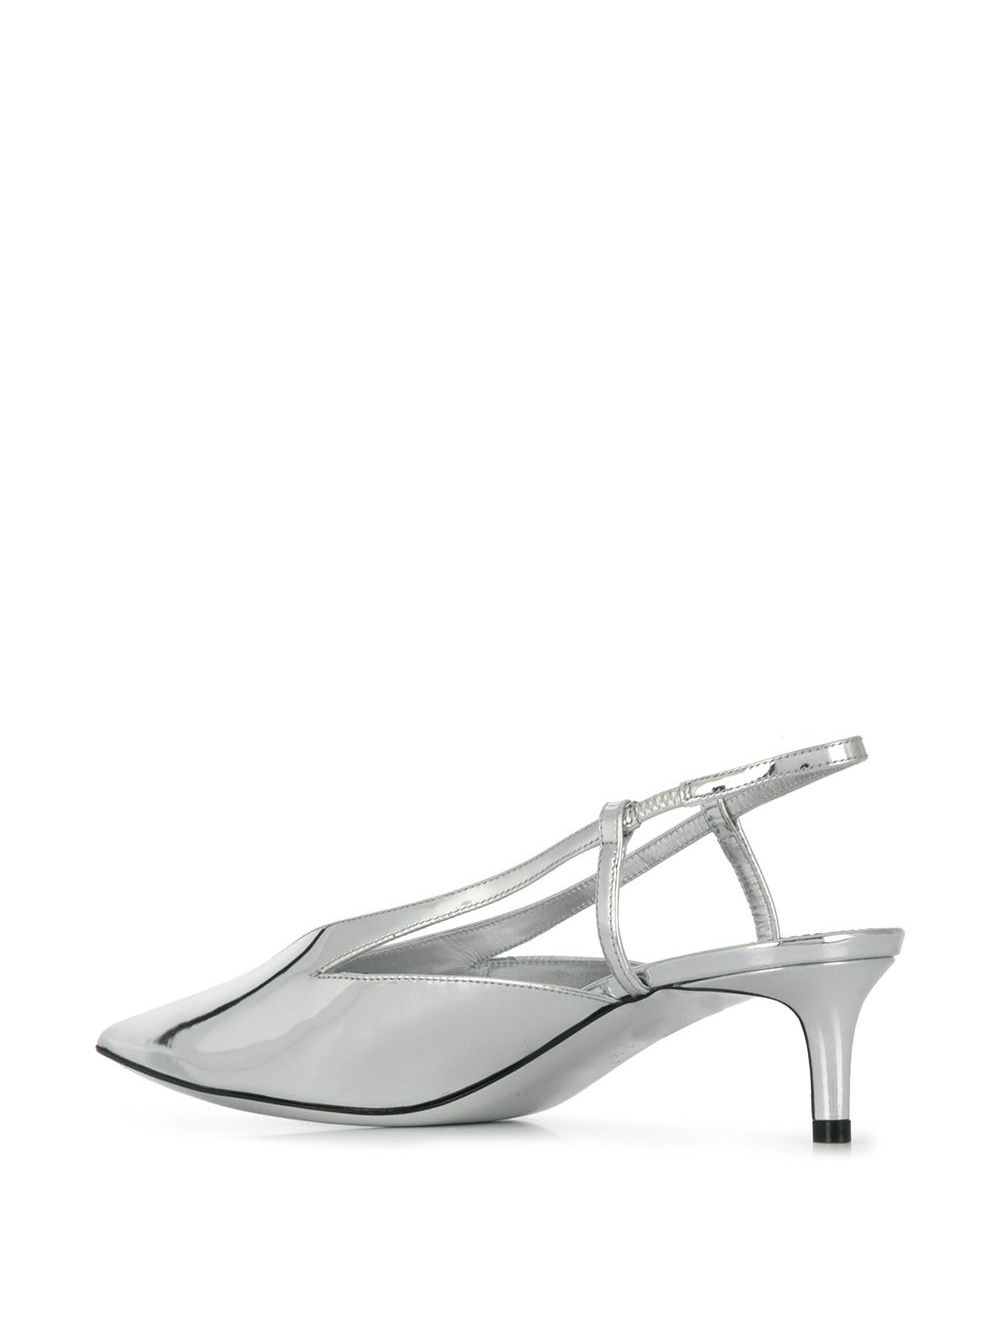 фото Givenchy туфли-лодочки с ремешком на пятке